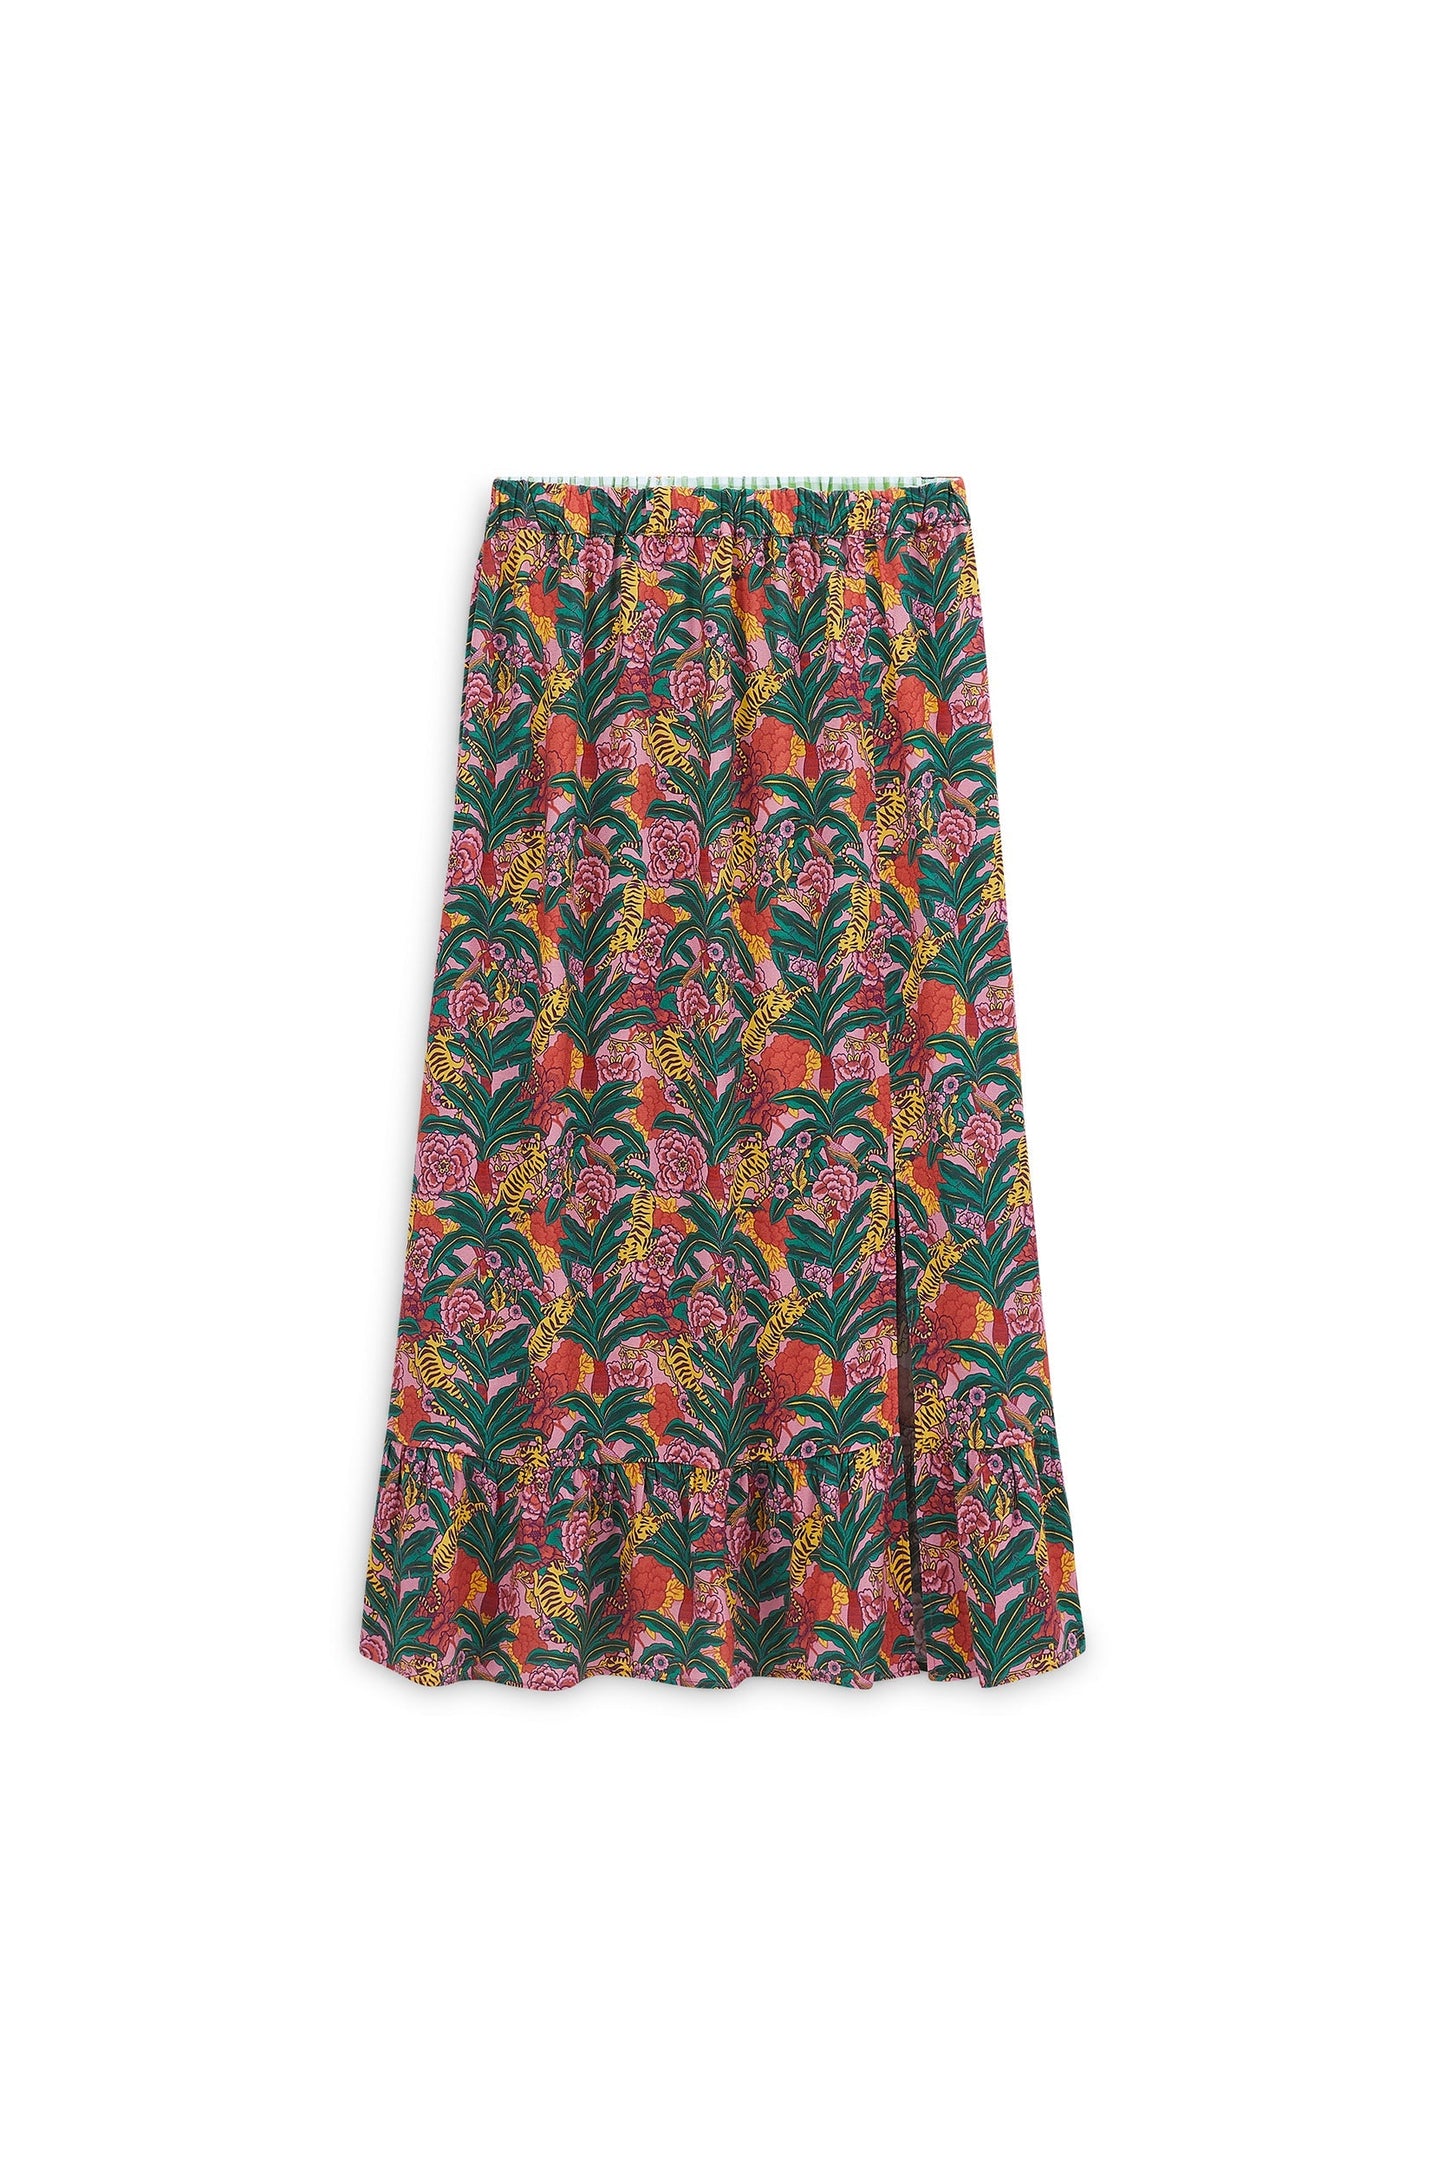 Platine floral tiger print skirt